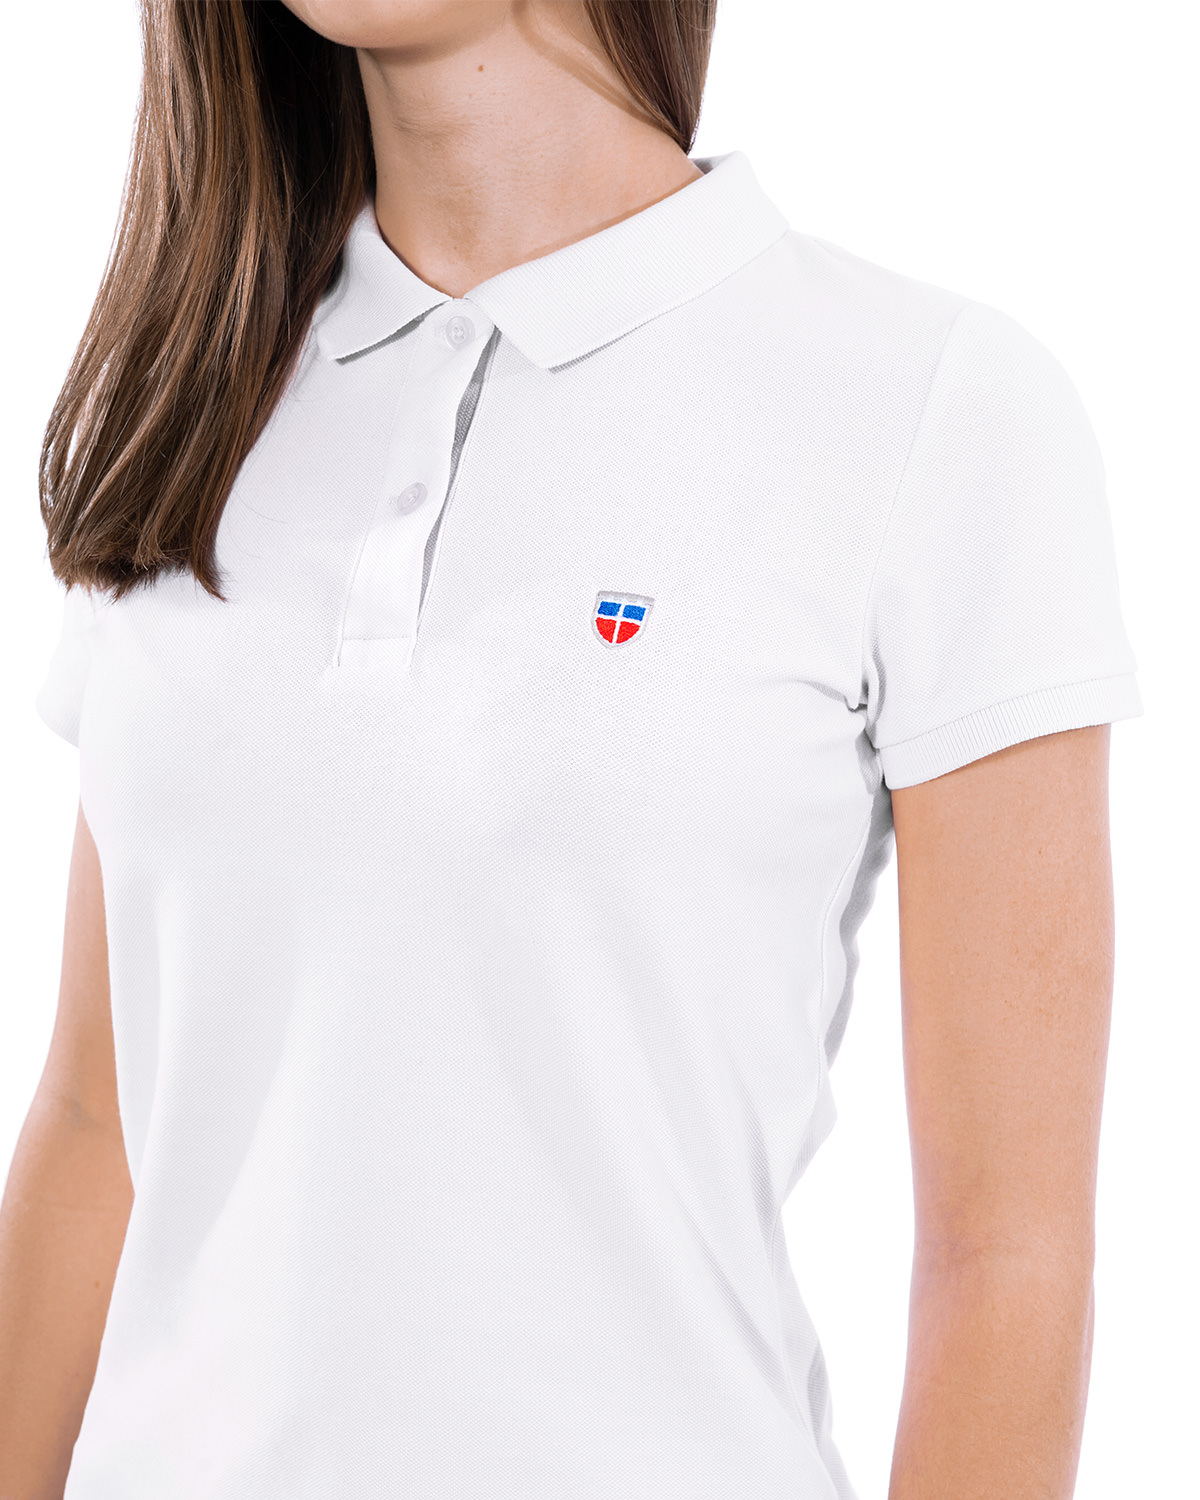 Vorderansicht des weißen Ladies-Polo-Shirt der Saarland-Marke LA SARRE. Nahaufnahme: Im Vordergrund das blaue Label mit der Aufschrift LA SARRE am unteren Saum links. Die Struktur des Piqué-Stoffs ist sichtbar.